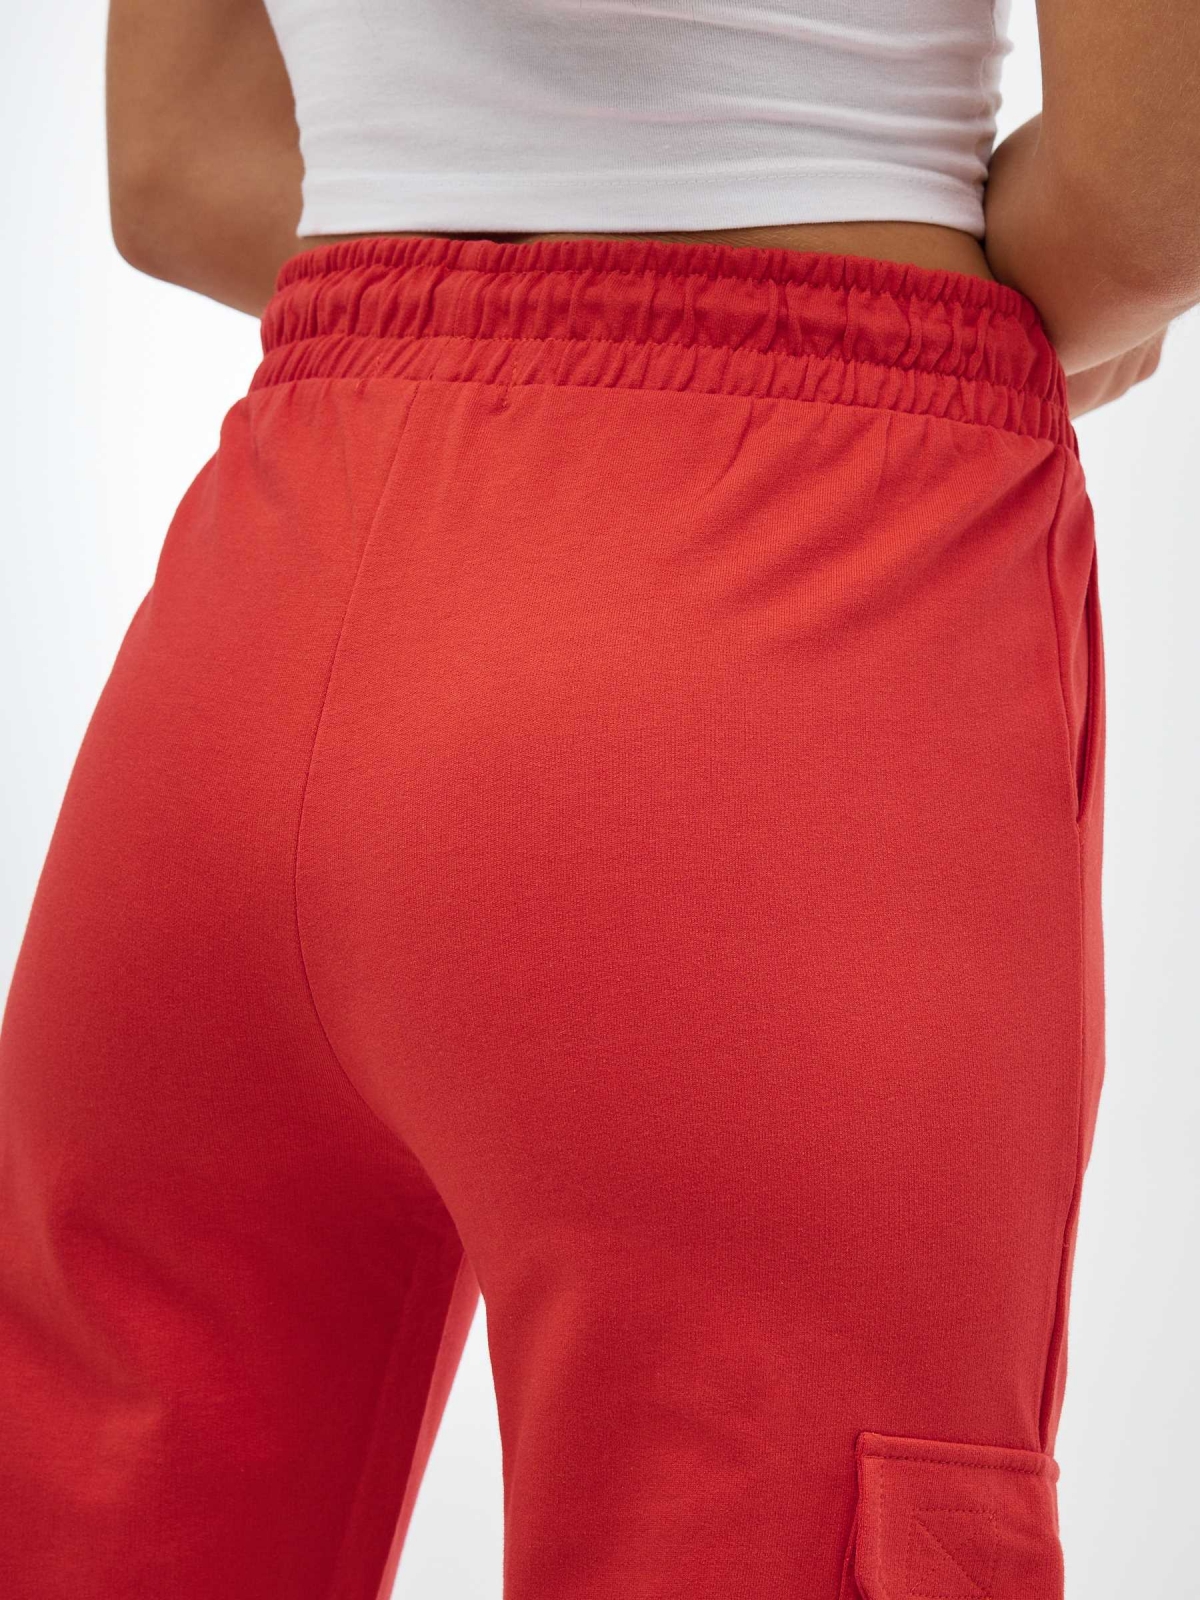 Plush jogger pants orange detail view